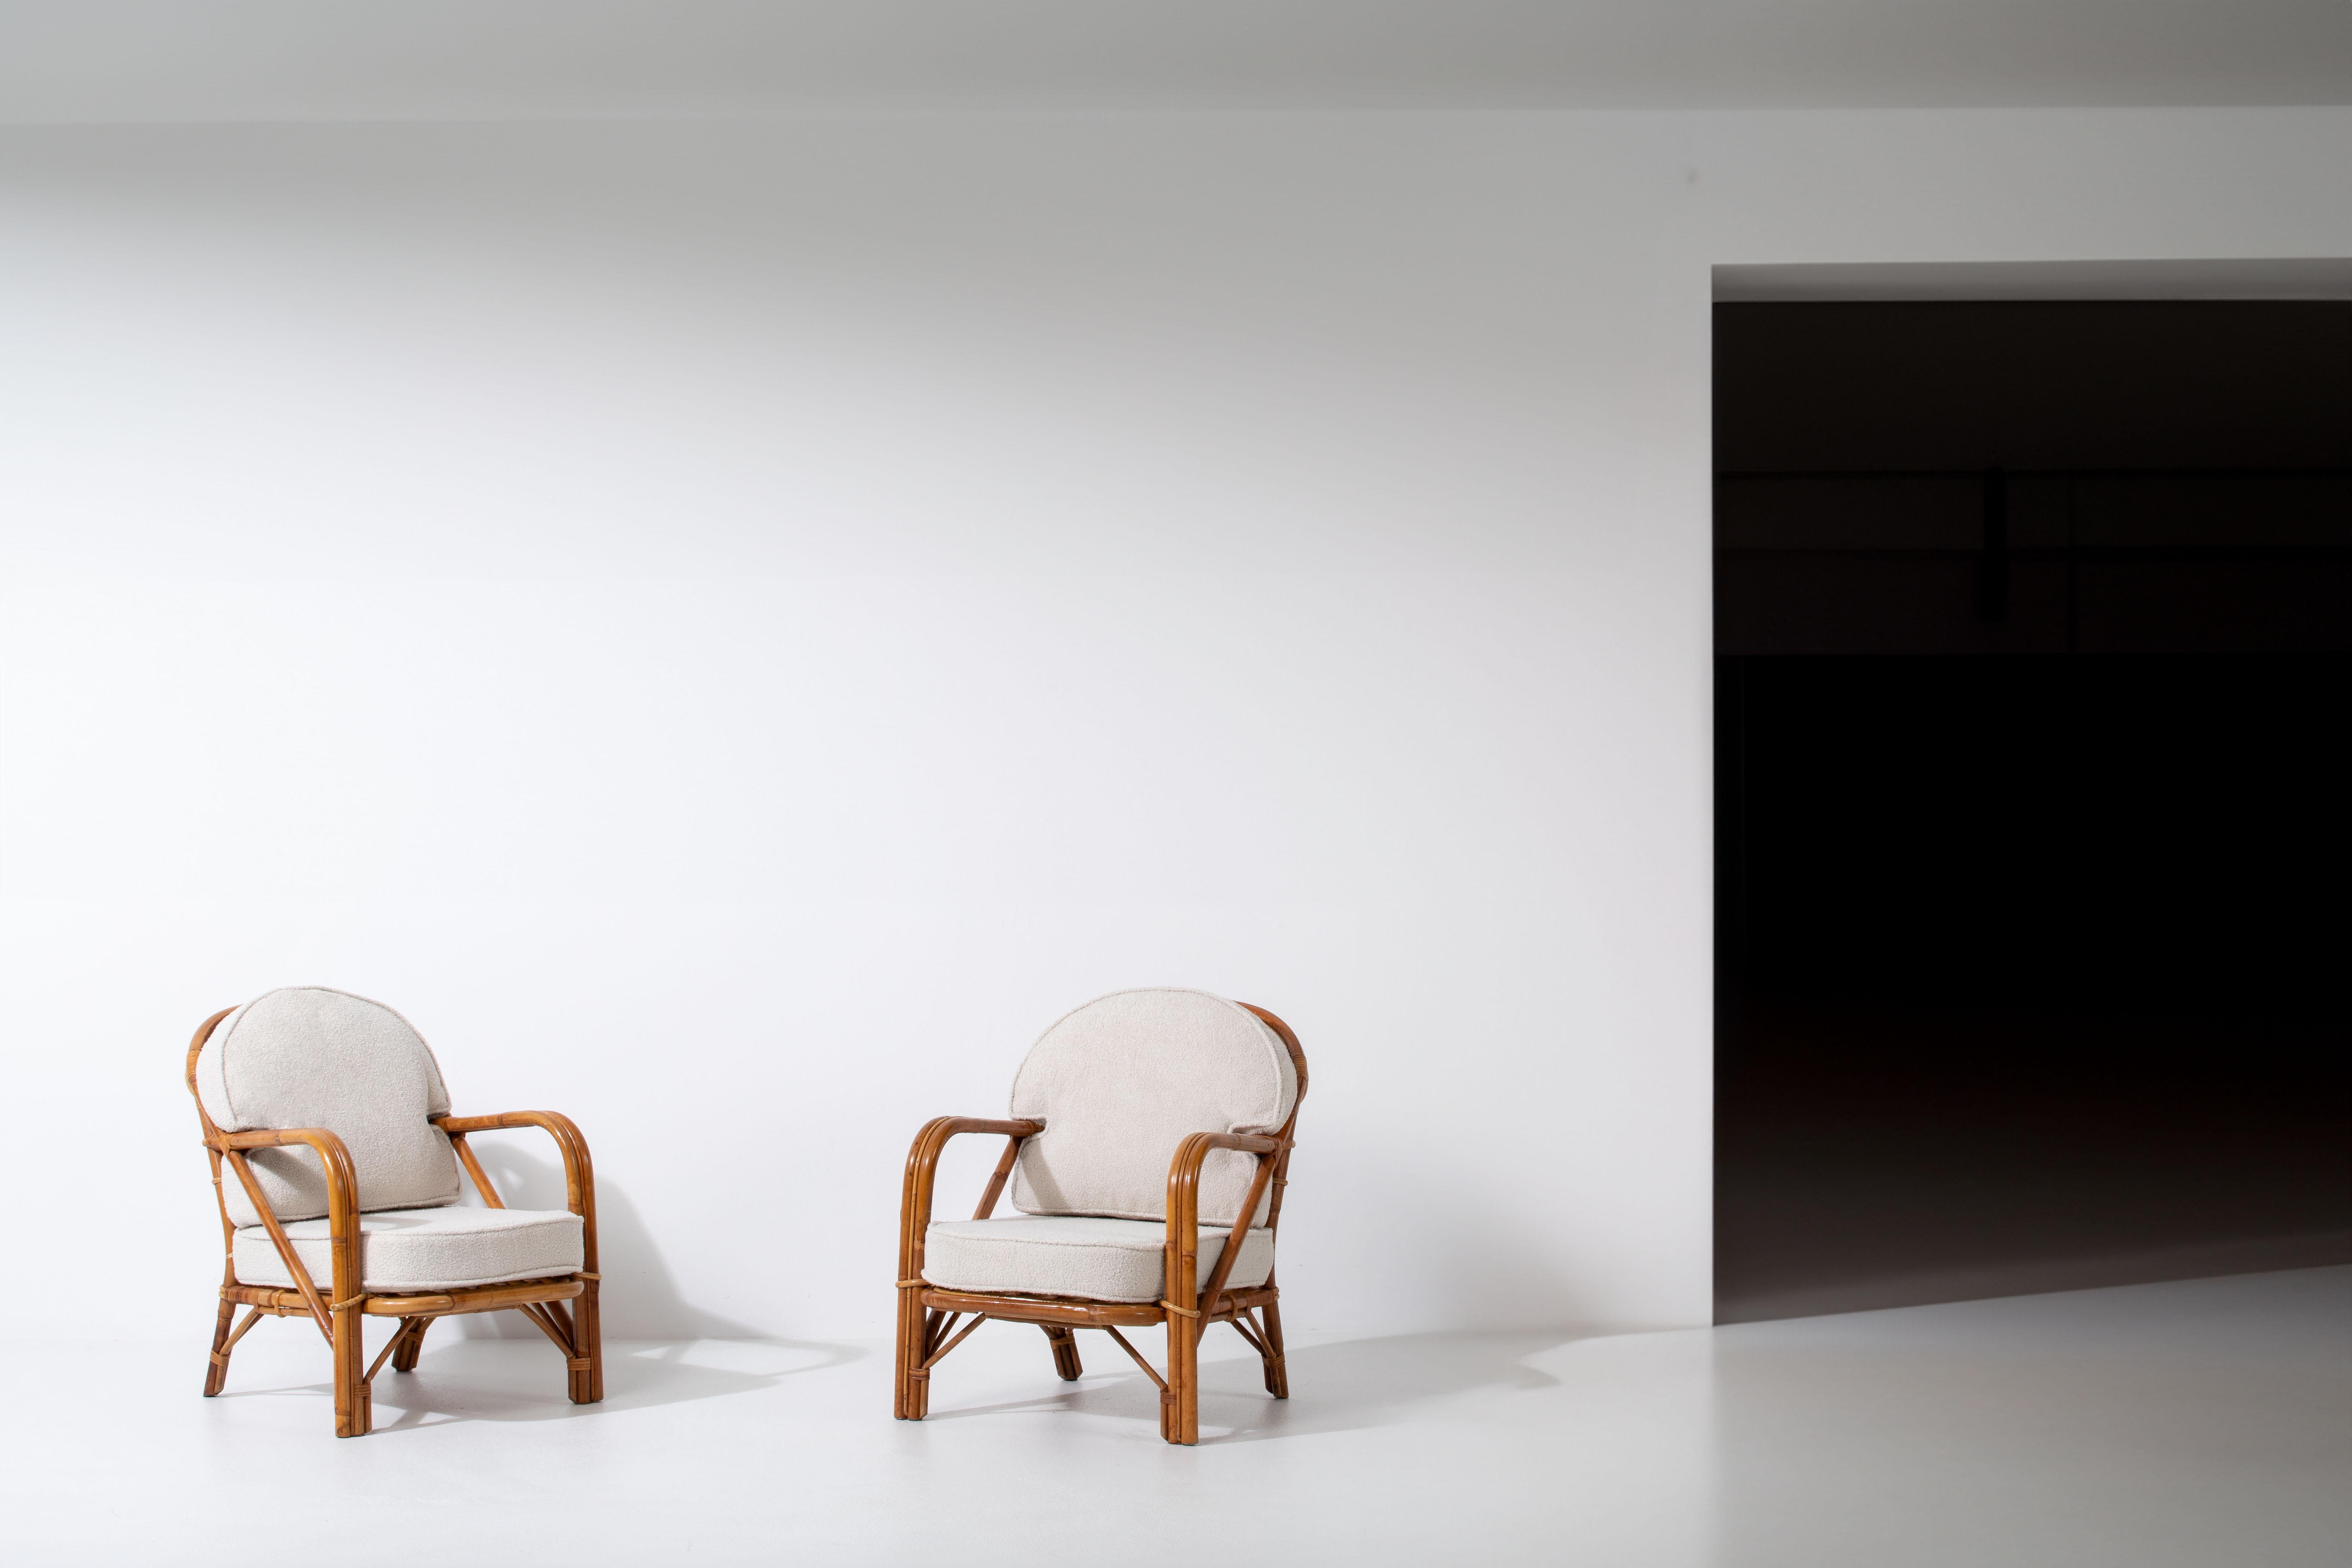 Voici une paire de fauteuils captivants, méticuleusement fabriqués en rotin et dotés d'un revêtement en bouclette, conçus par le célèbre duo français Adrien Audoux et Frida Minet. Cette création exceptionnelle rend hommage à leur philosophie de